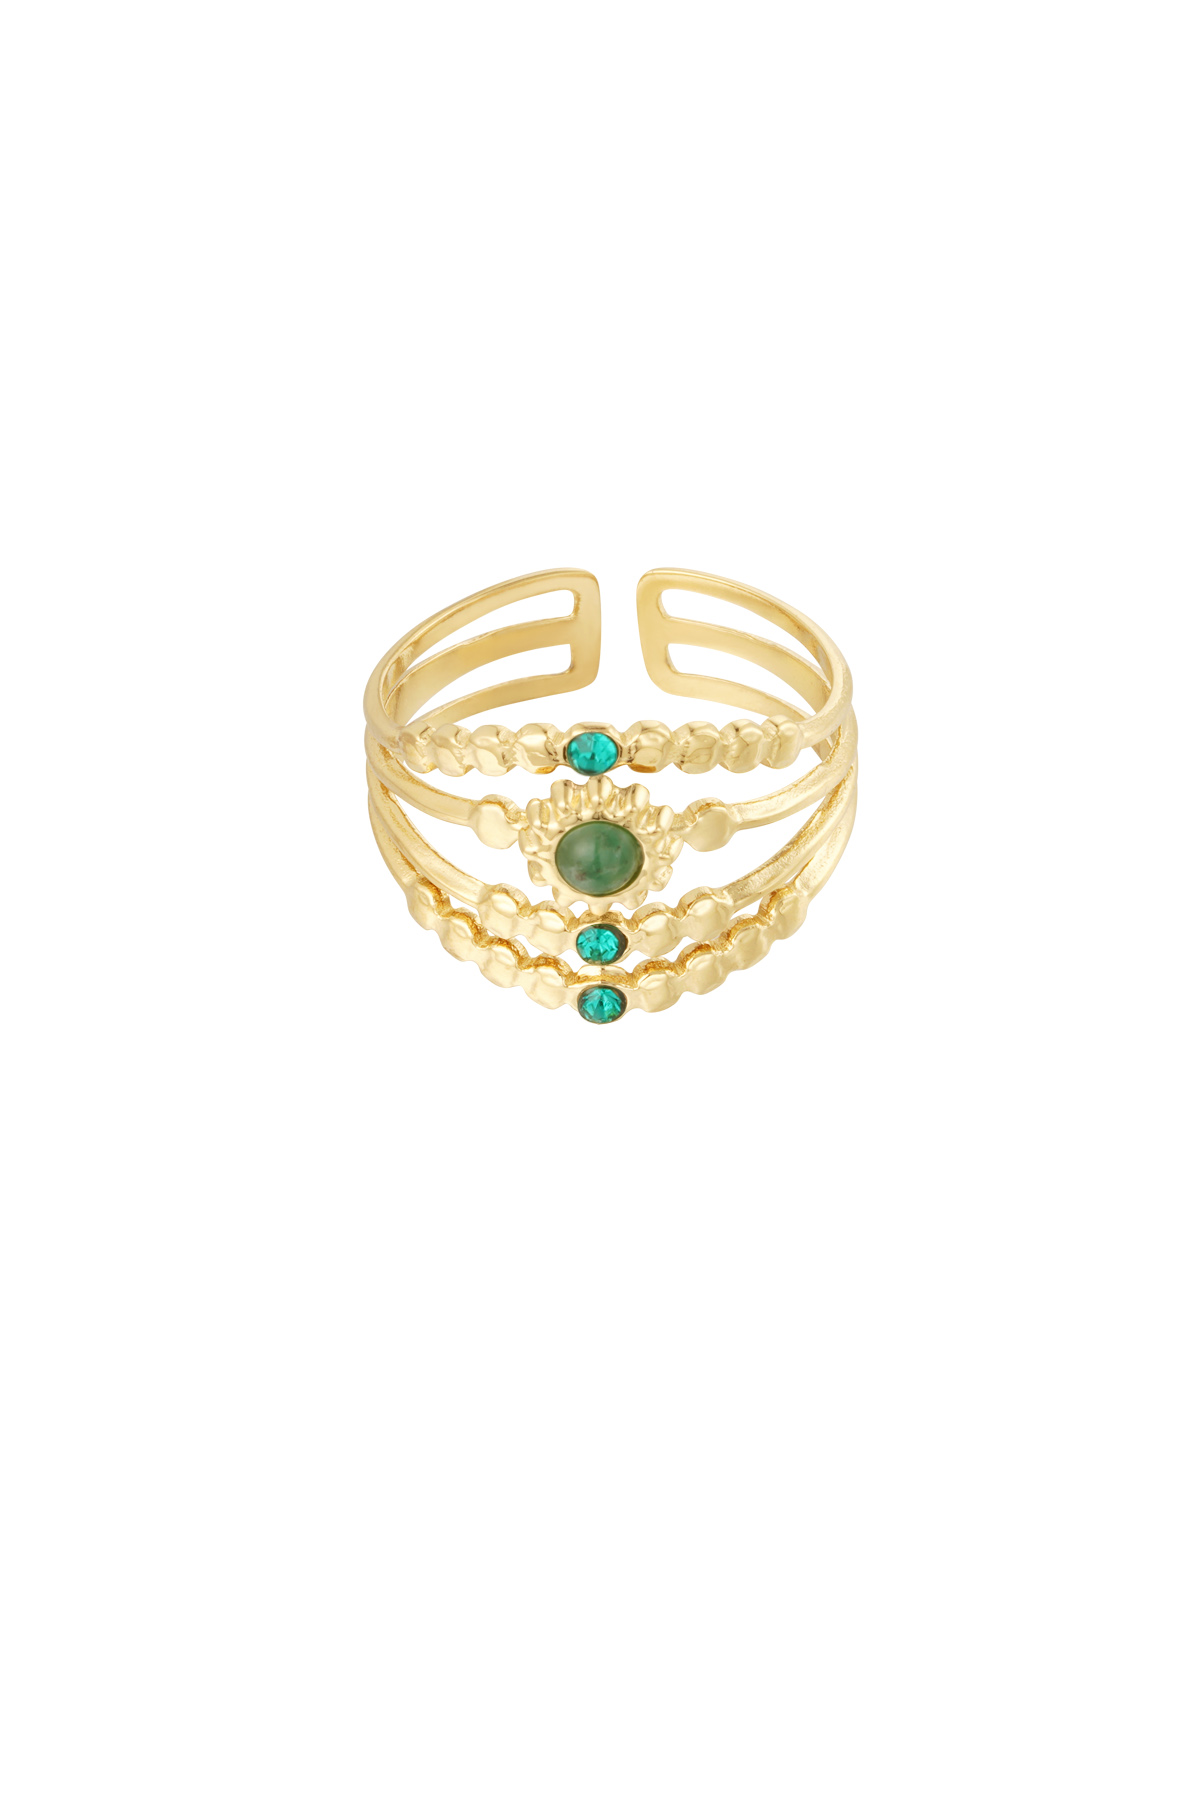 Ring vierlagig mit Steinen - Gold/Grün